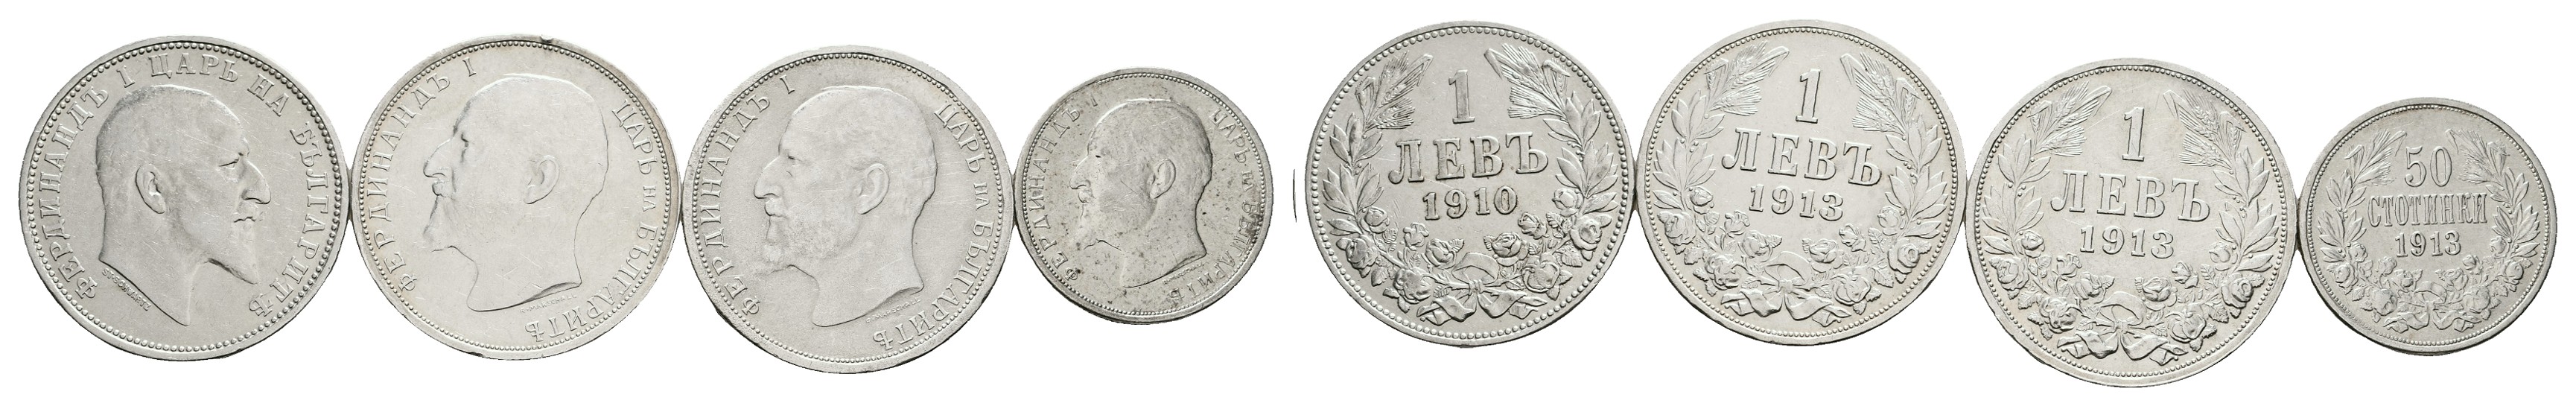  MGS Schweiz 2 Franken 1920 B Feingewicht: 8,35g   